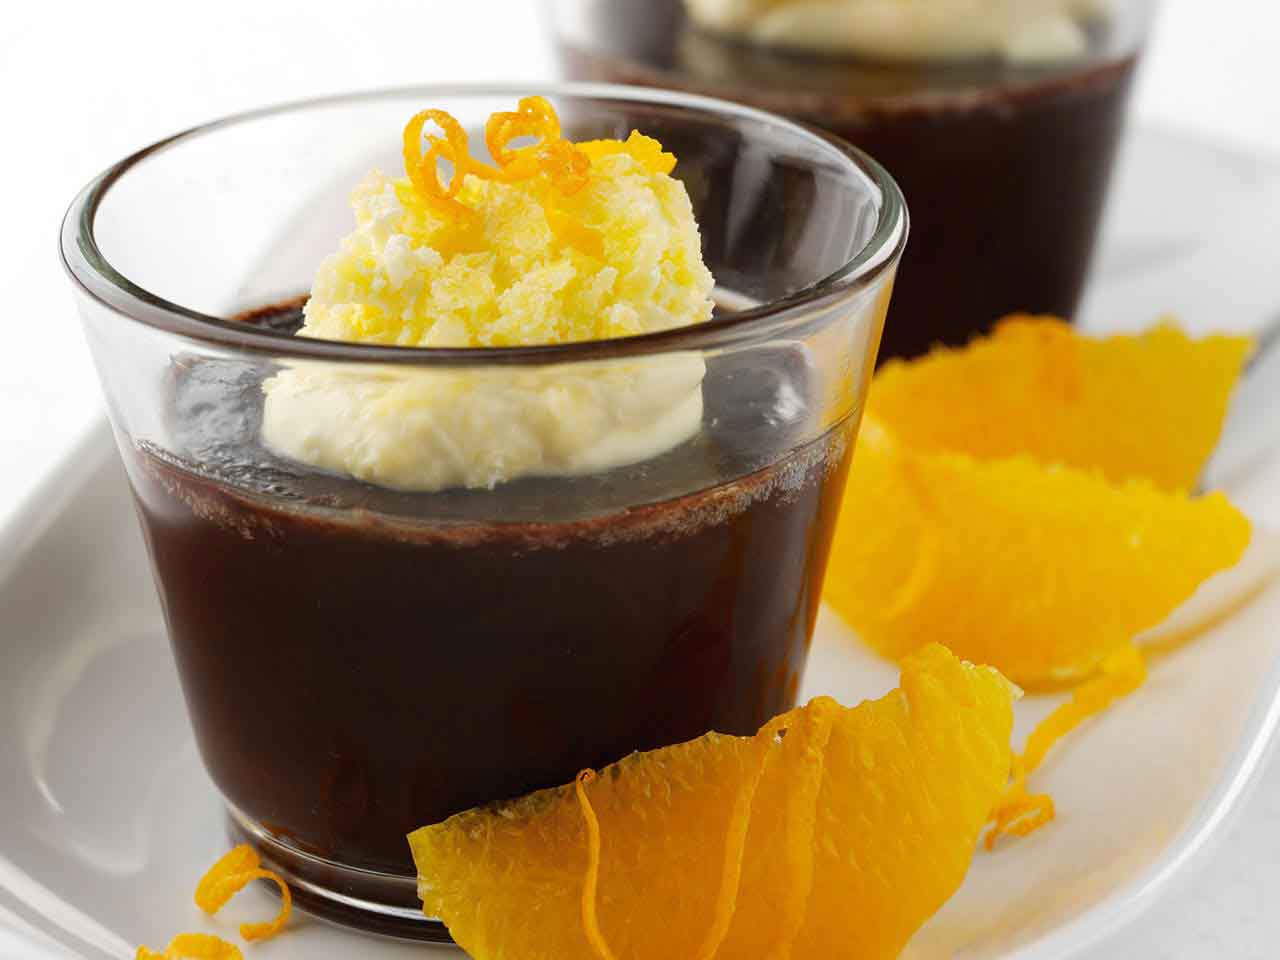 Chocolate orange pudding recipe